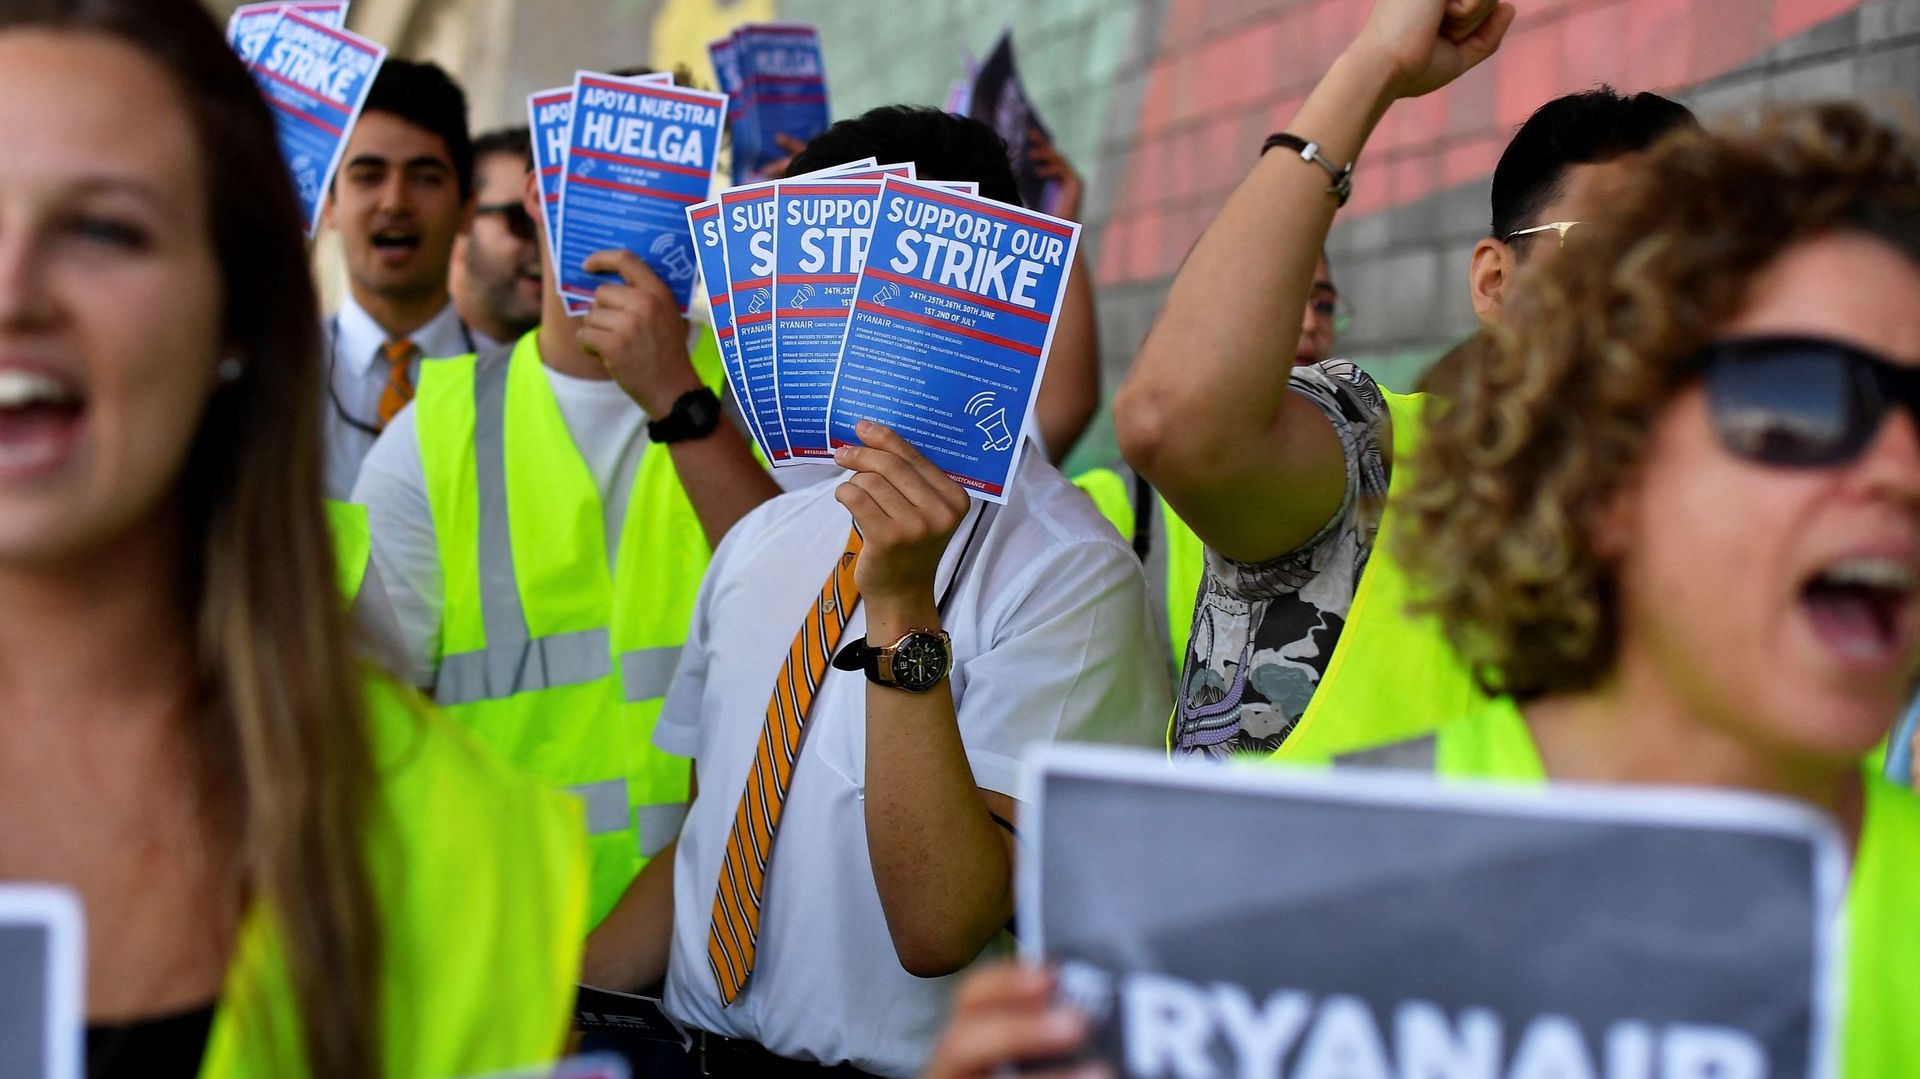 Des employés de Ryanair tiennent des tracts sur lesquels on peut lire "Soutenez notre grève", alors qu’ils manifestent au Terminal 2 de l’aéroport El Prat à Barcelone, le 1er juillet 2022.